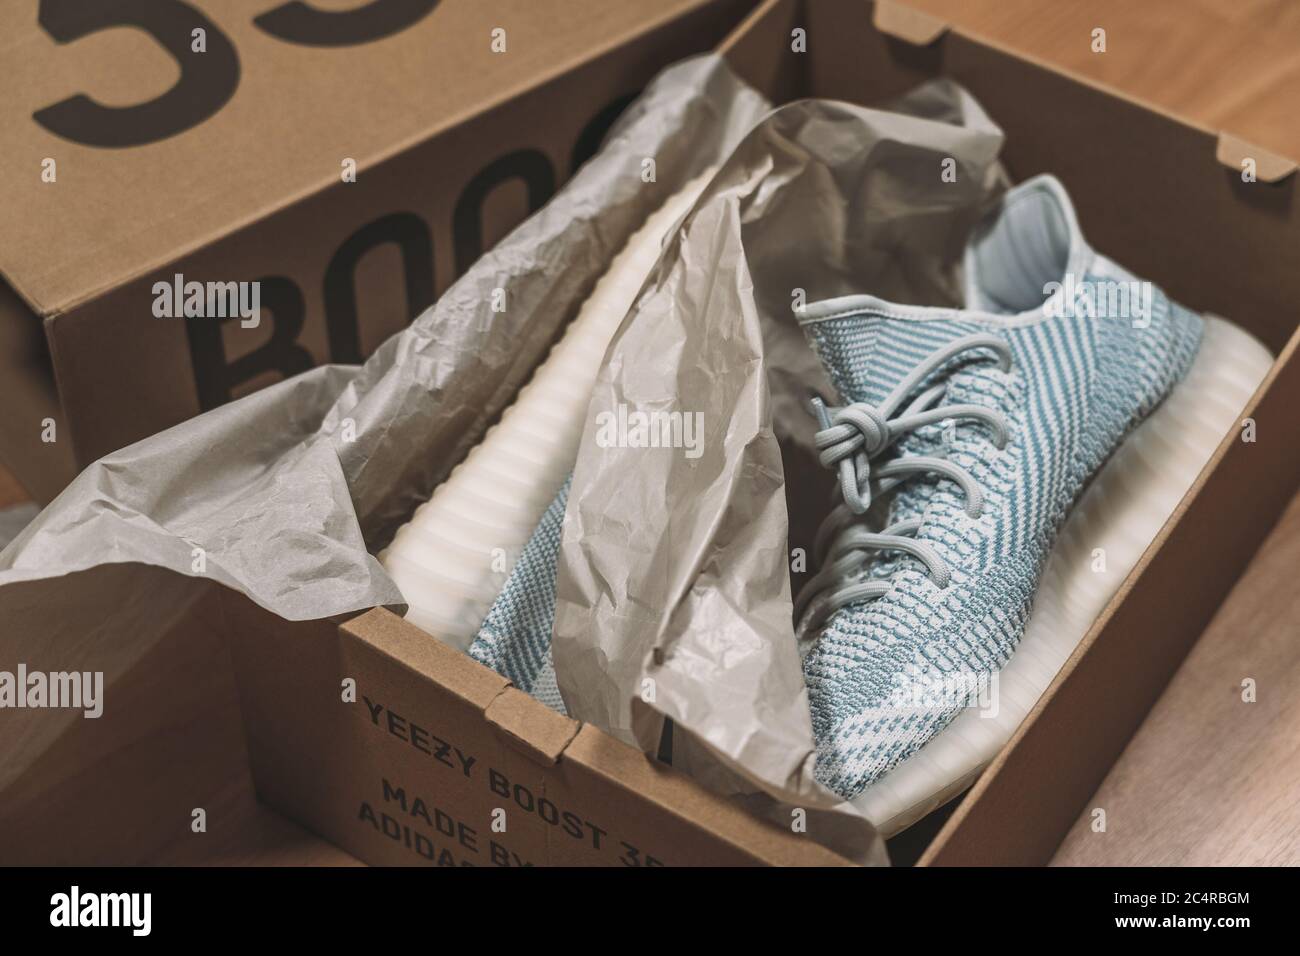 Moscou, Russie - juin 2020 : Adidas Yeezy Boost 350 V2 Cloud White - Famous Limited Collection Sneakers Fashion de Kanye West et Adidas collaboration, chaussures de sport à la mode. Banque D'Images